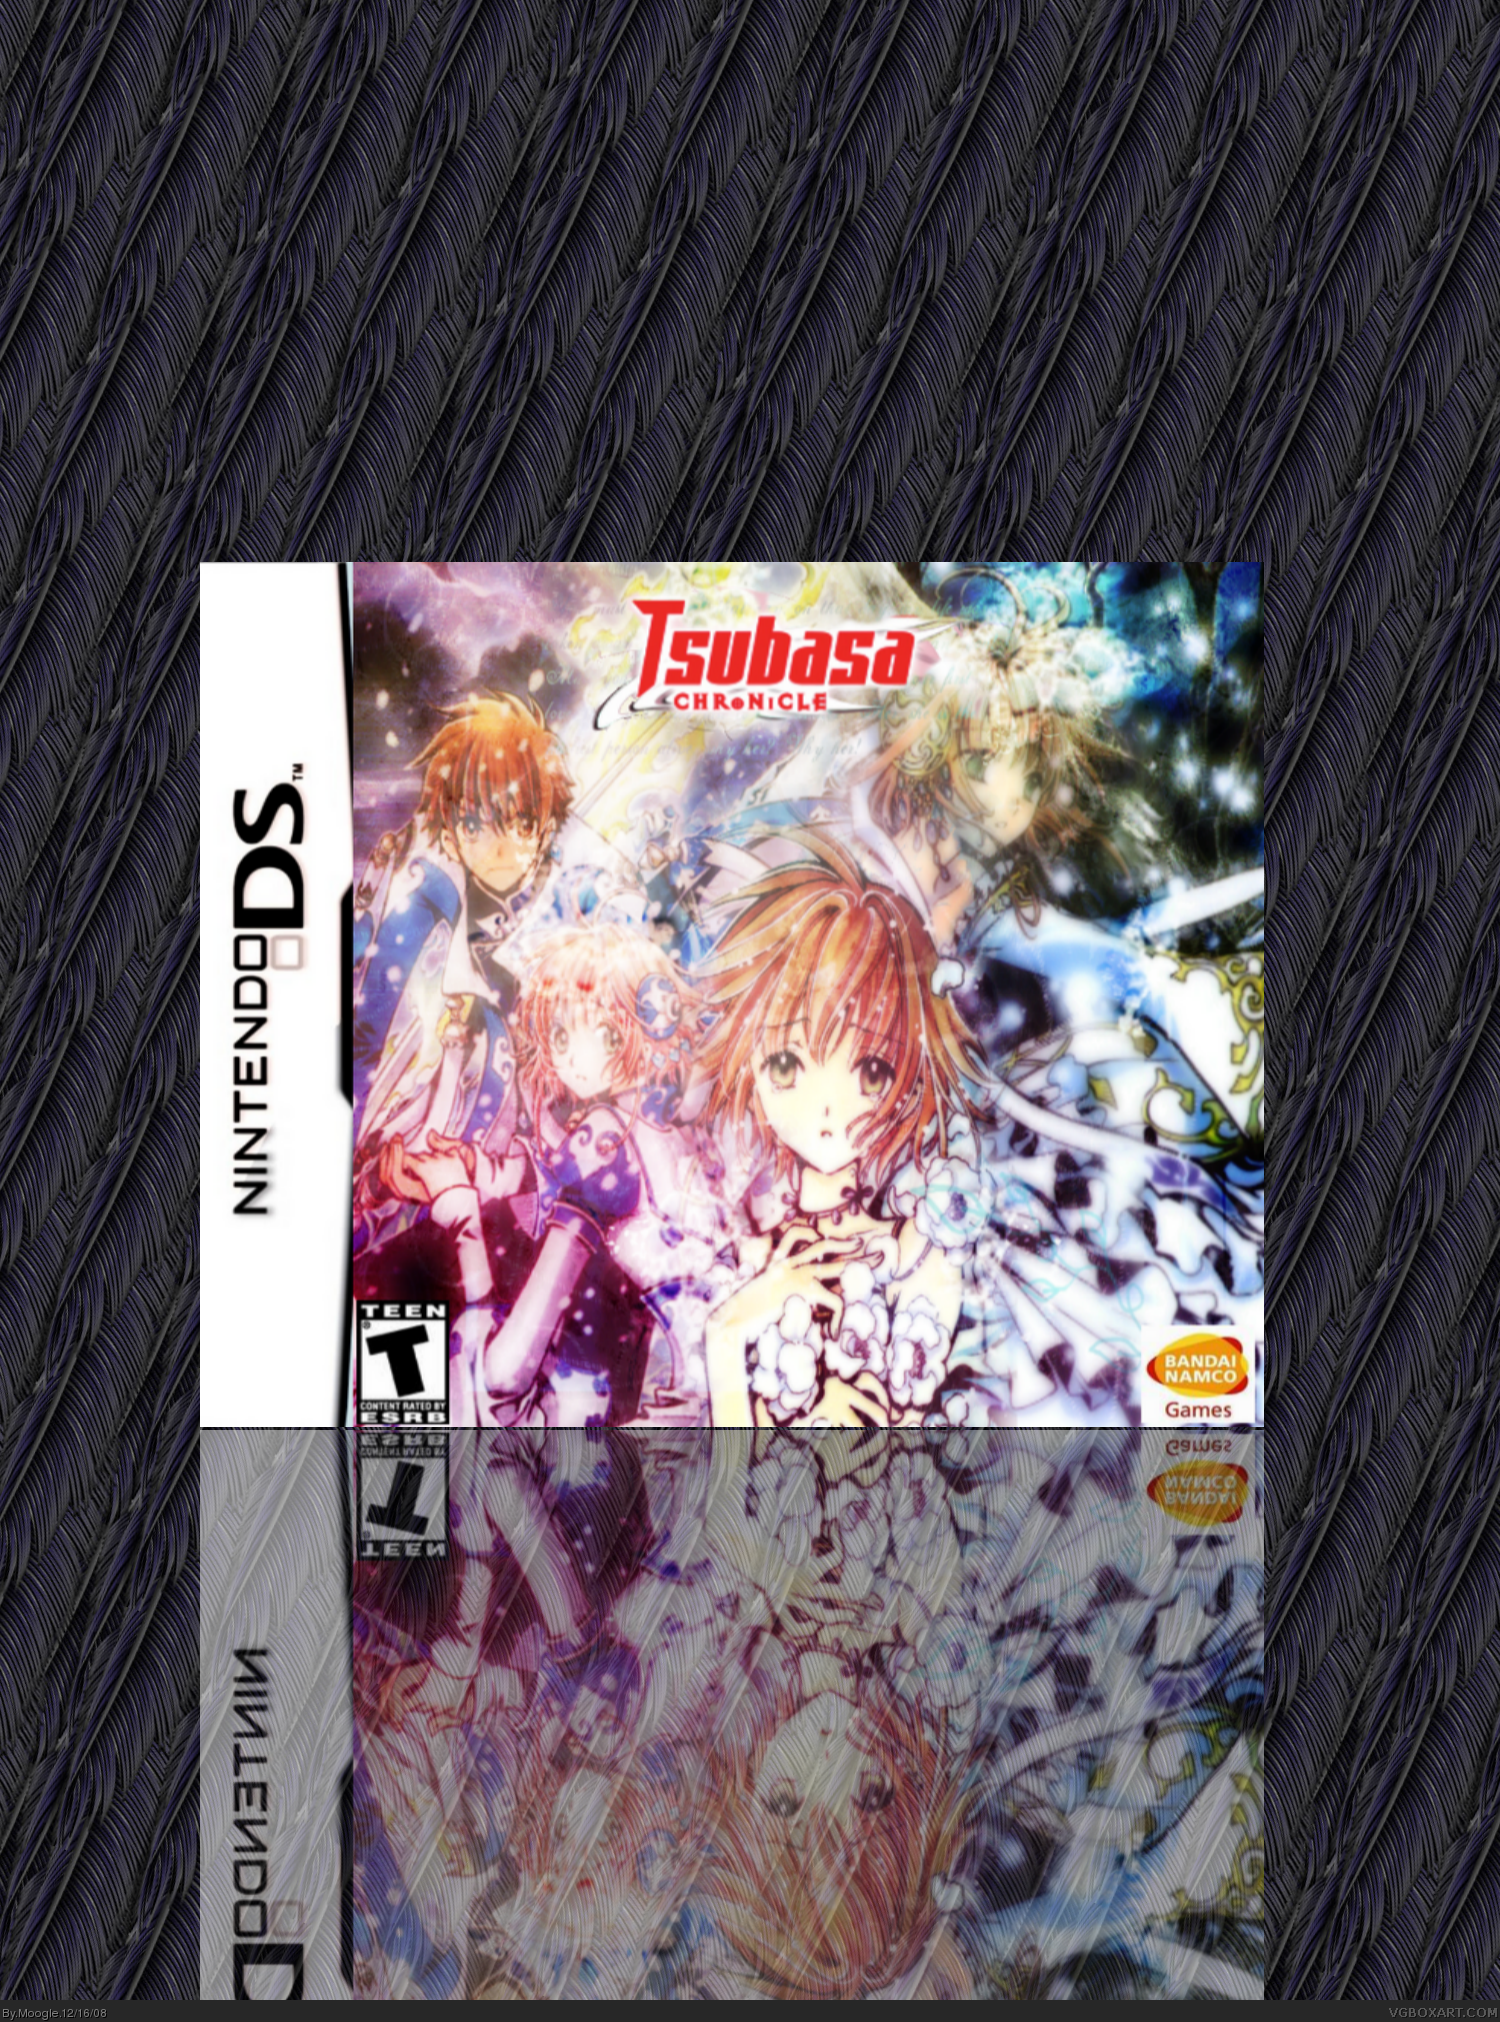 Tsubasa DS box cover